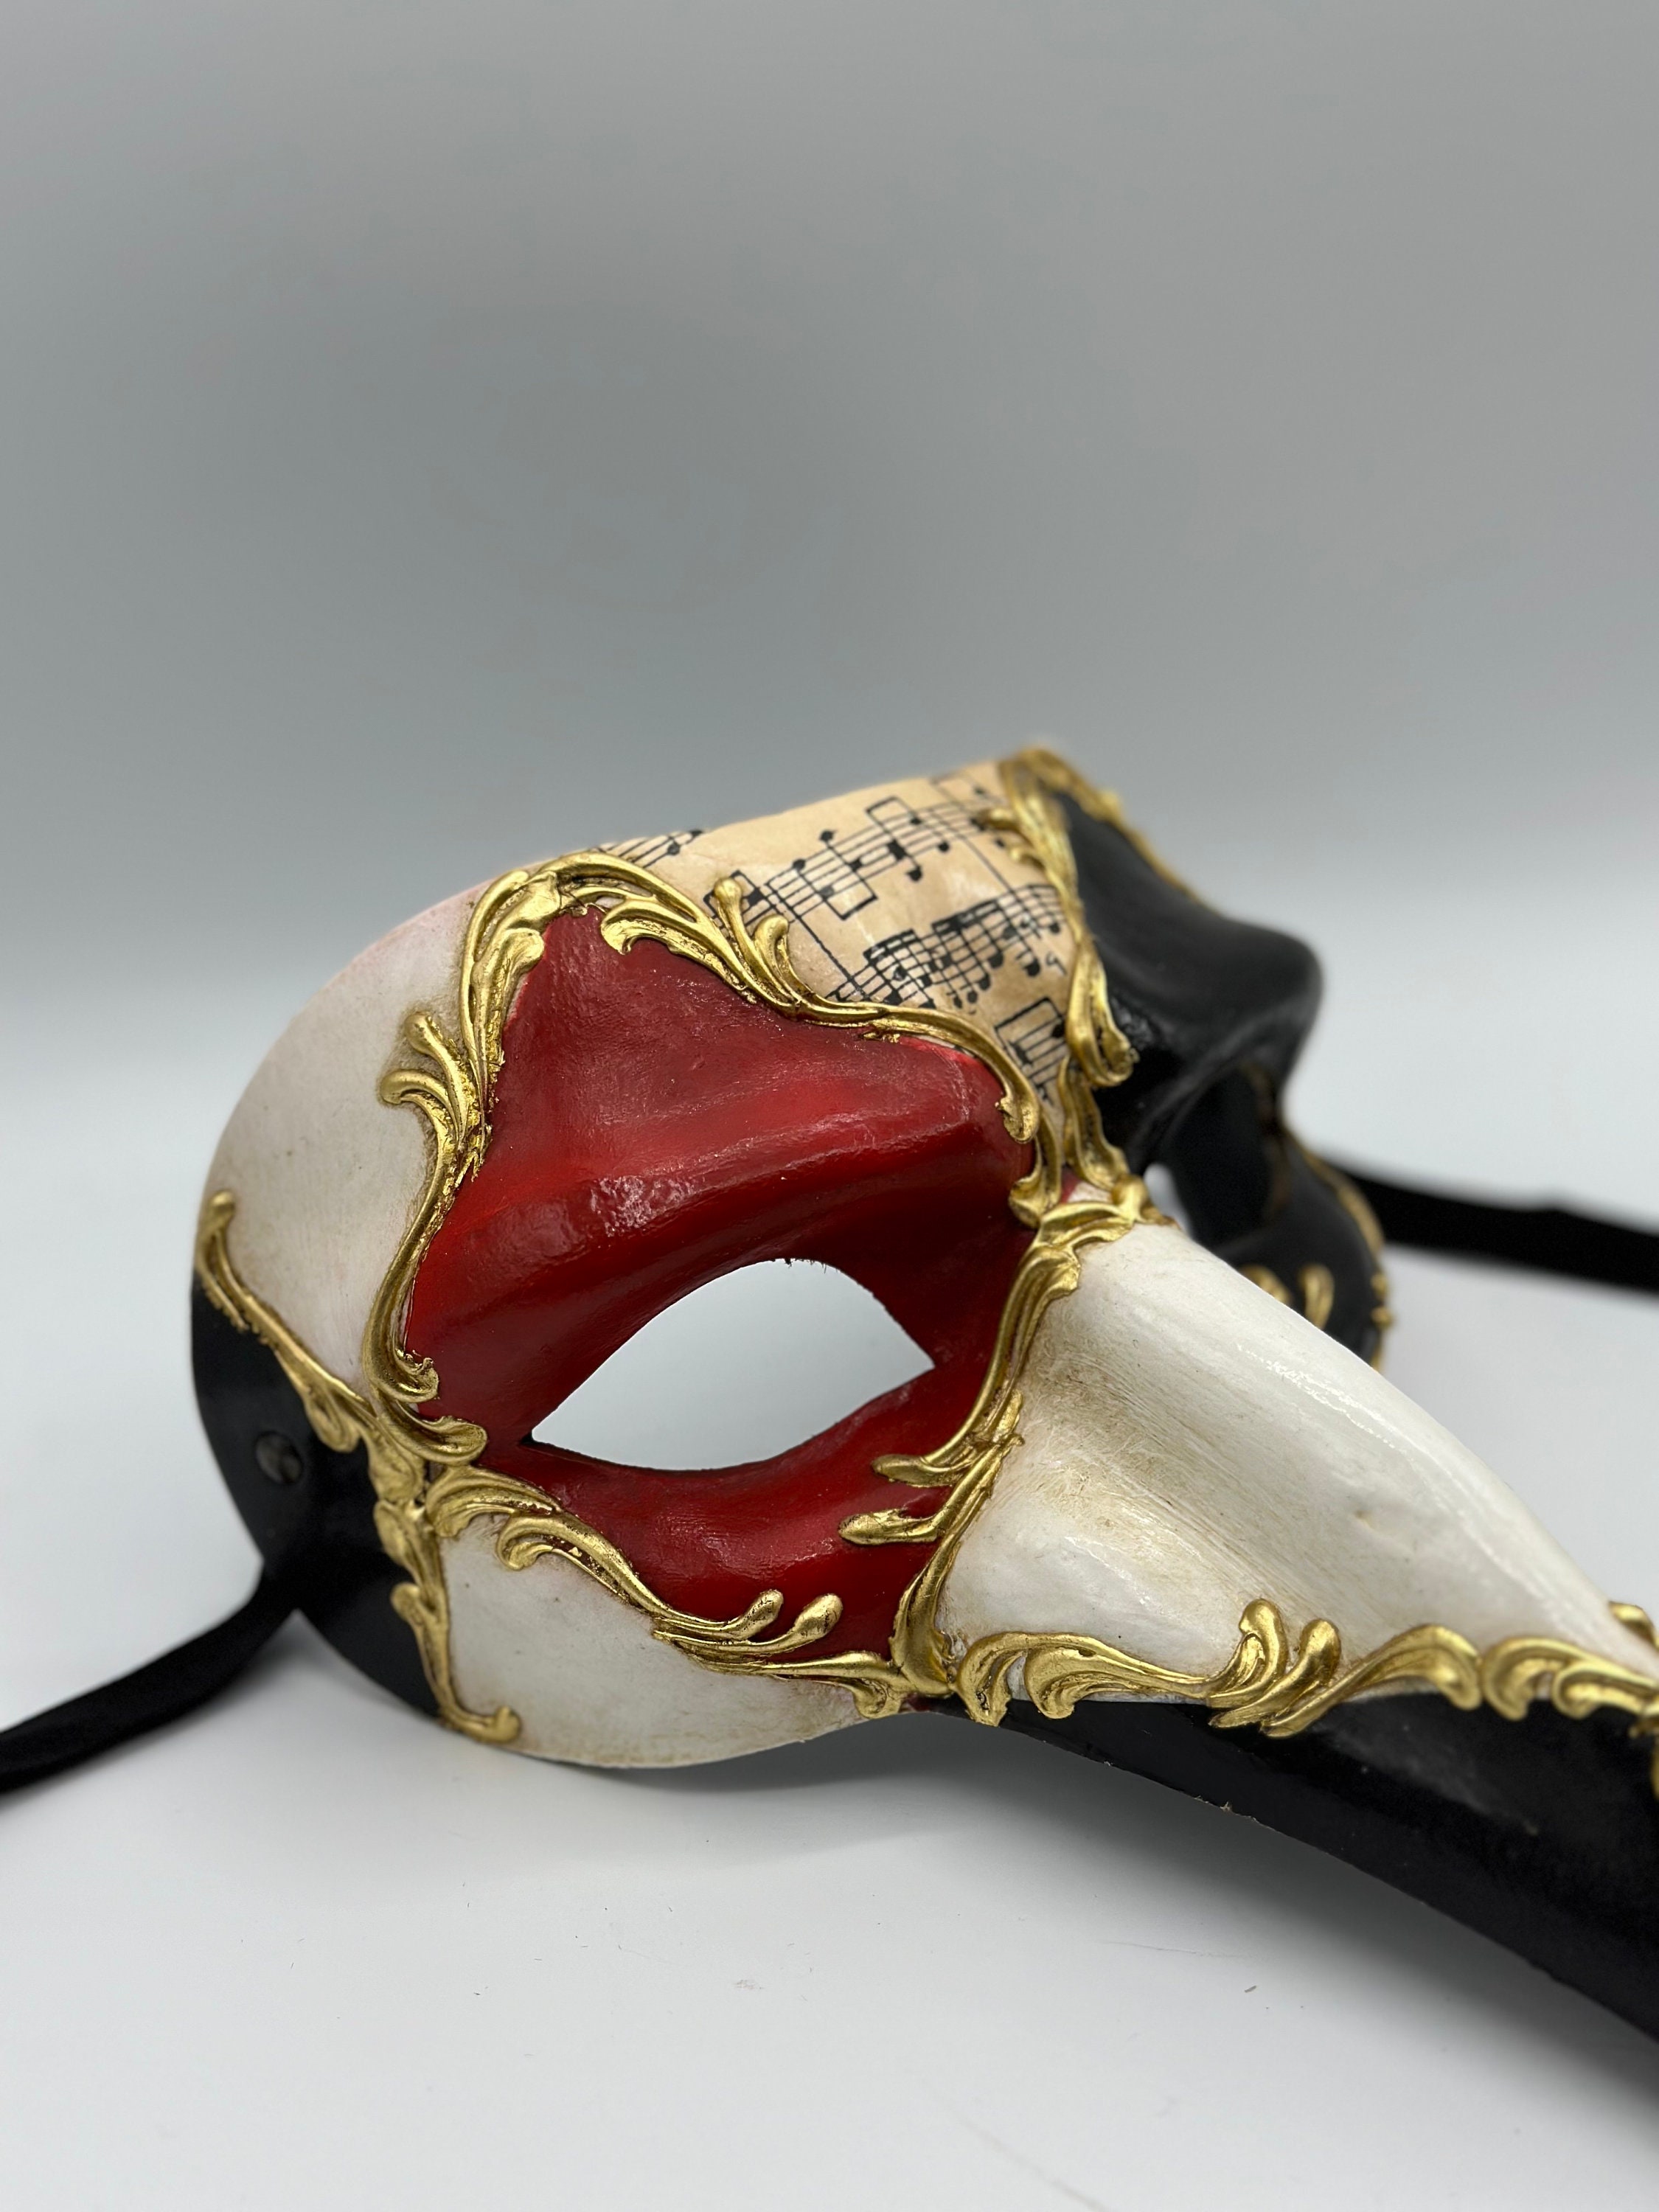 Long Nose Venetian Masks for sale - Cachemire 1